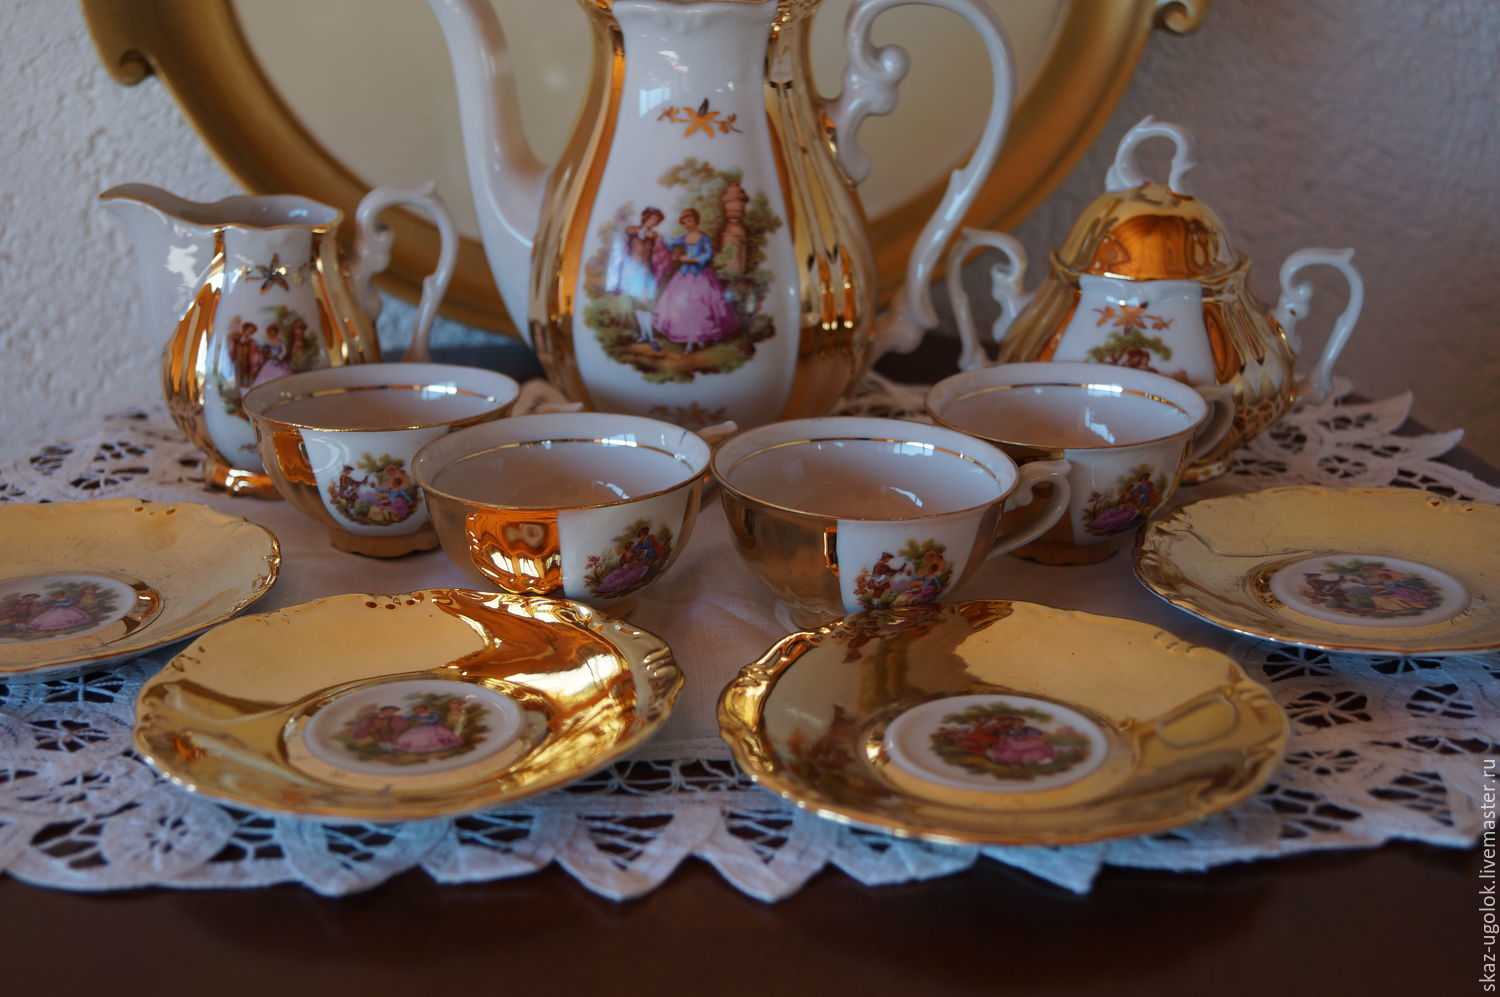 Фарфоровая посуда белая столовая, виды и характеристики качества чайных сервизов, антикварные английские чашки и тарелки, старинные китайские статуэтки и фигурки из холодного фарфора